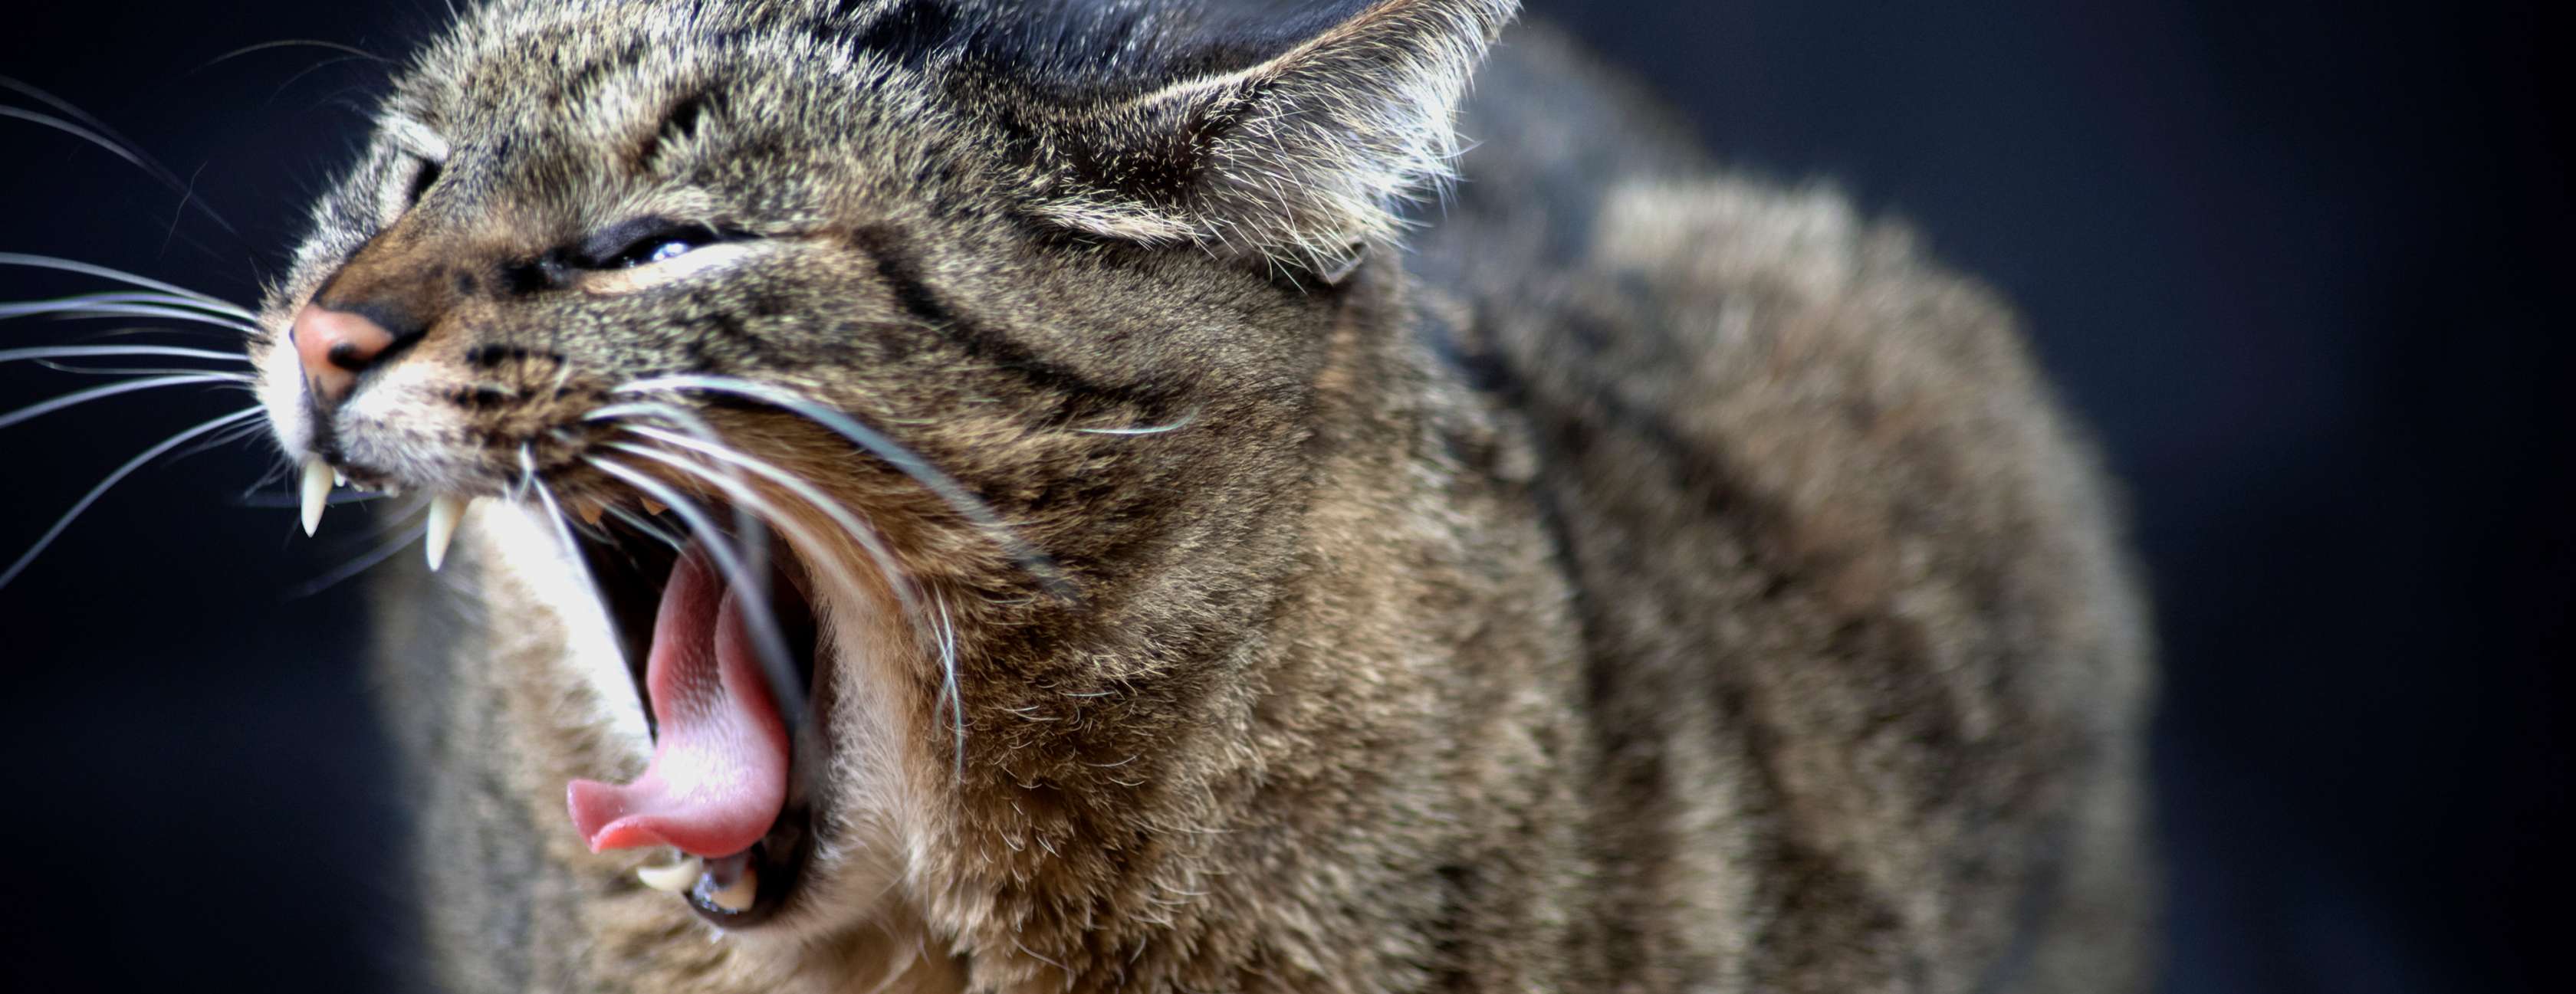 Allianz - Katzensprache: Eine Katze faucht und zeigt ihre Zähne.